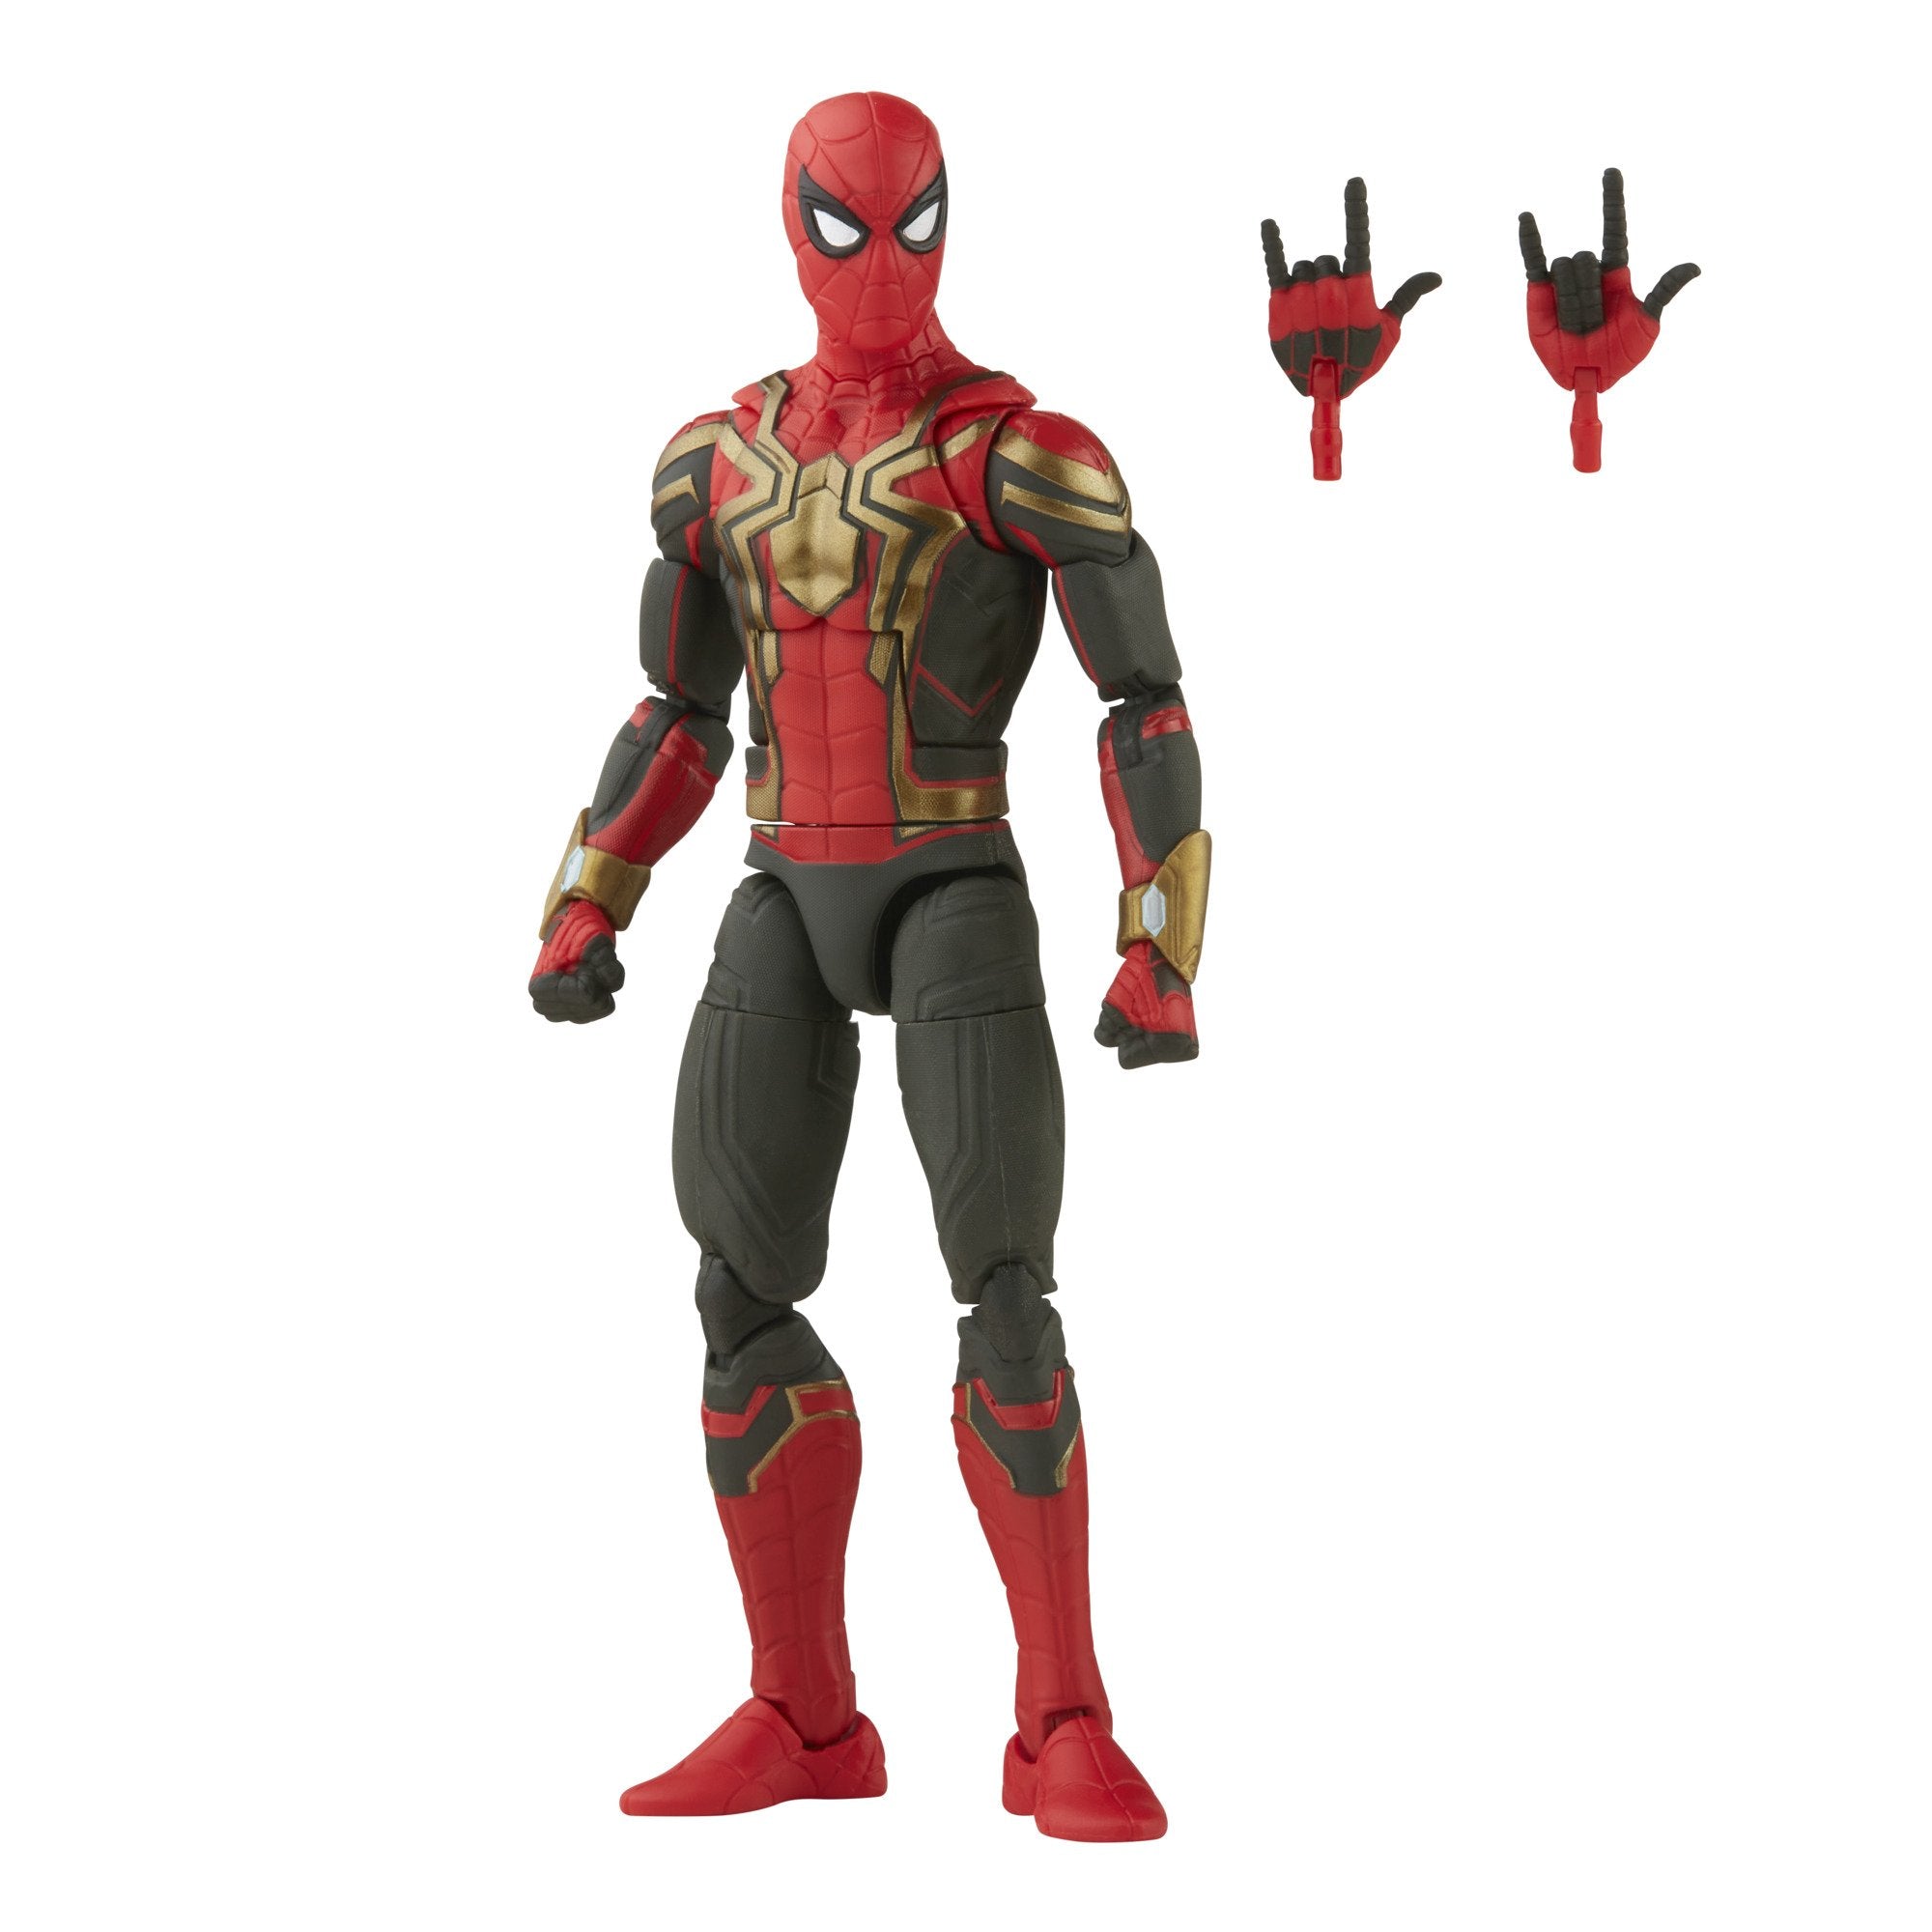 Marvel Legends Spider-Man 6" Integrated Suit Spider-Man Armadillo BAF